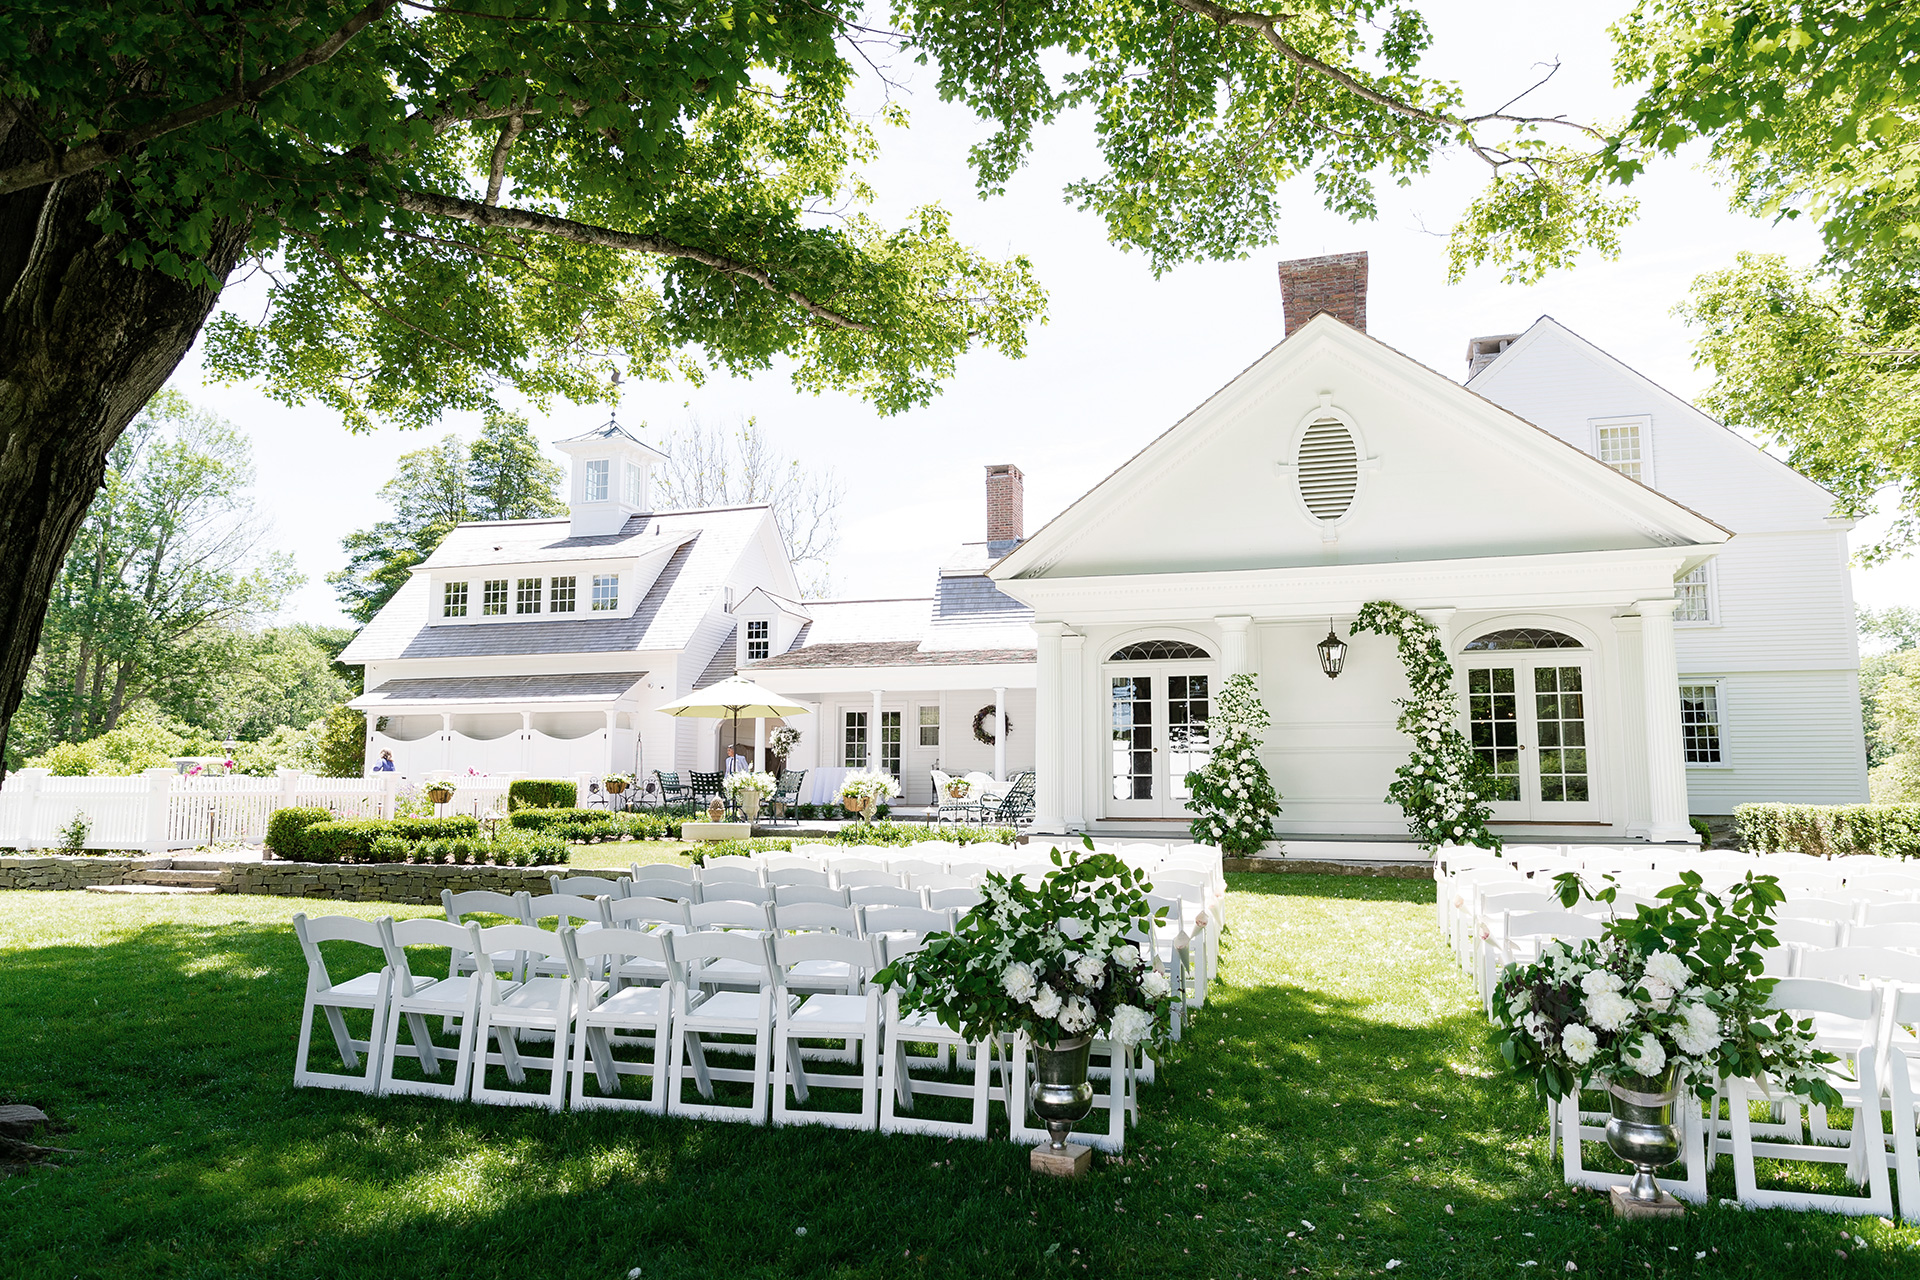 Smith Farm Gardens house. A white Wedding venue in Connecticut